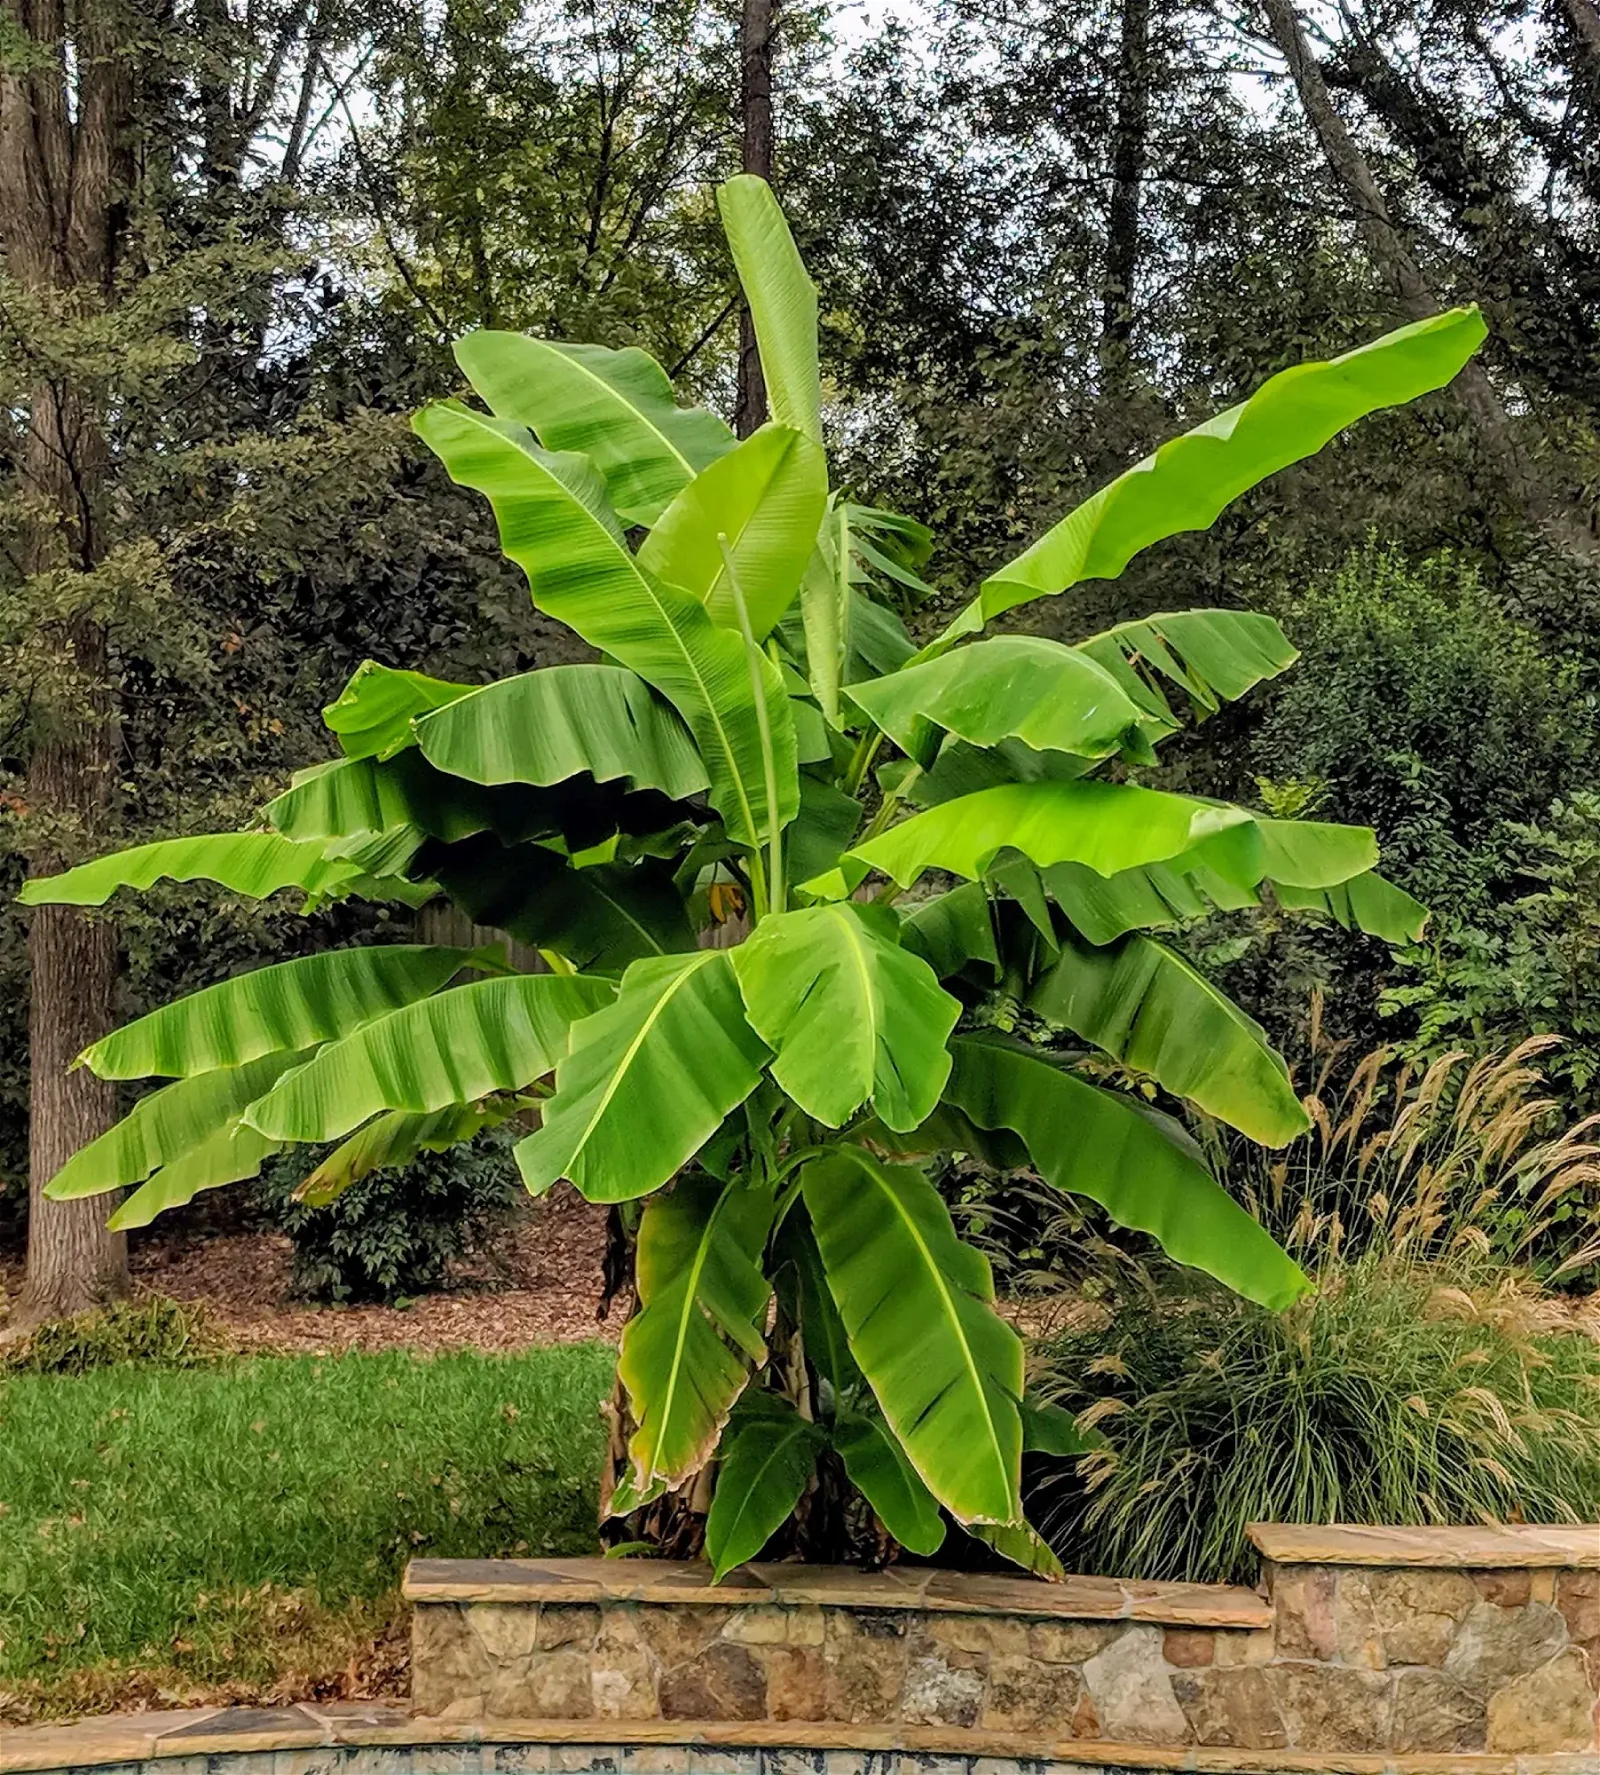 Bananenpflanze im Garten